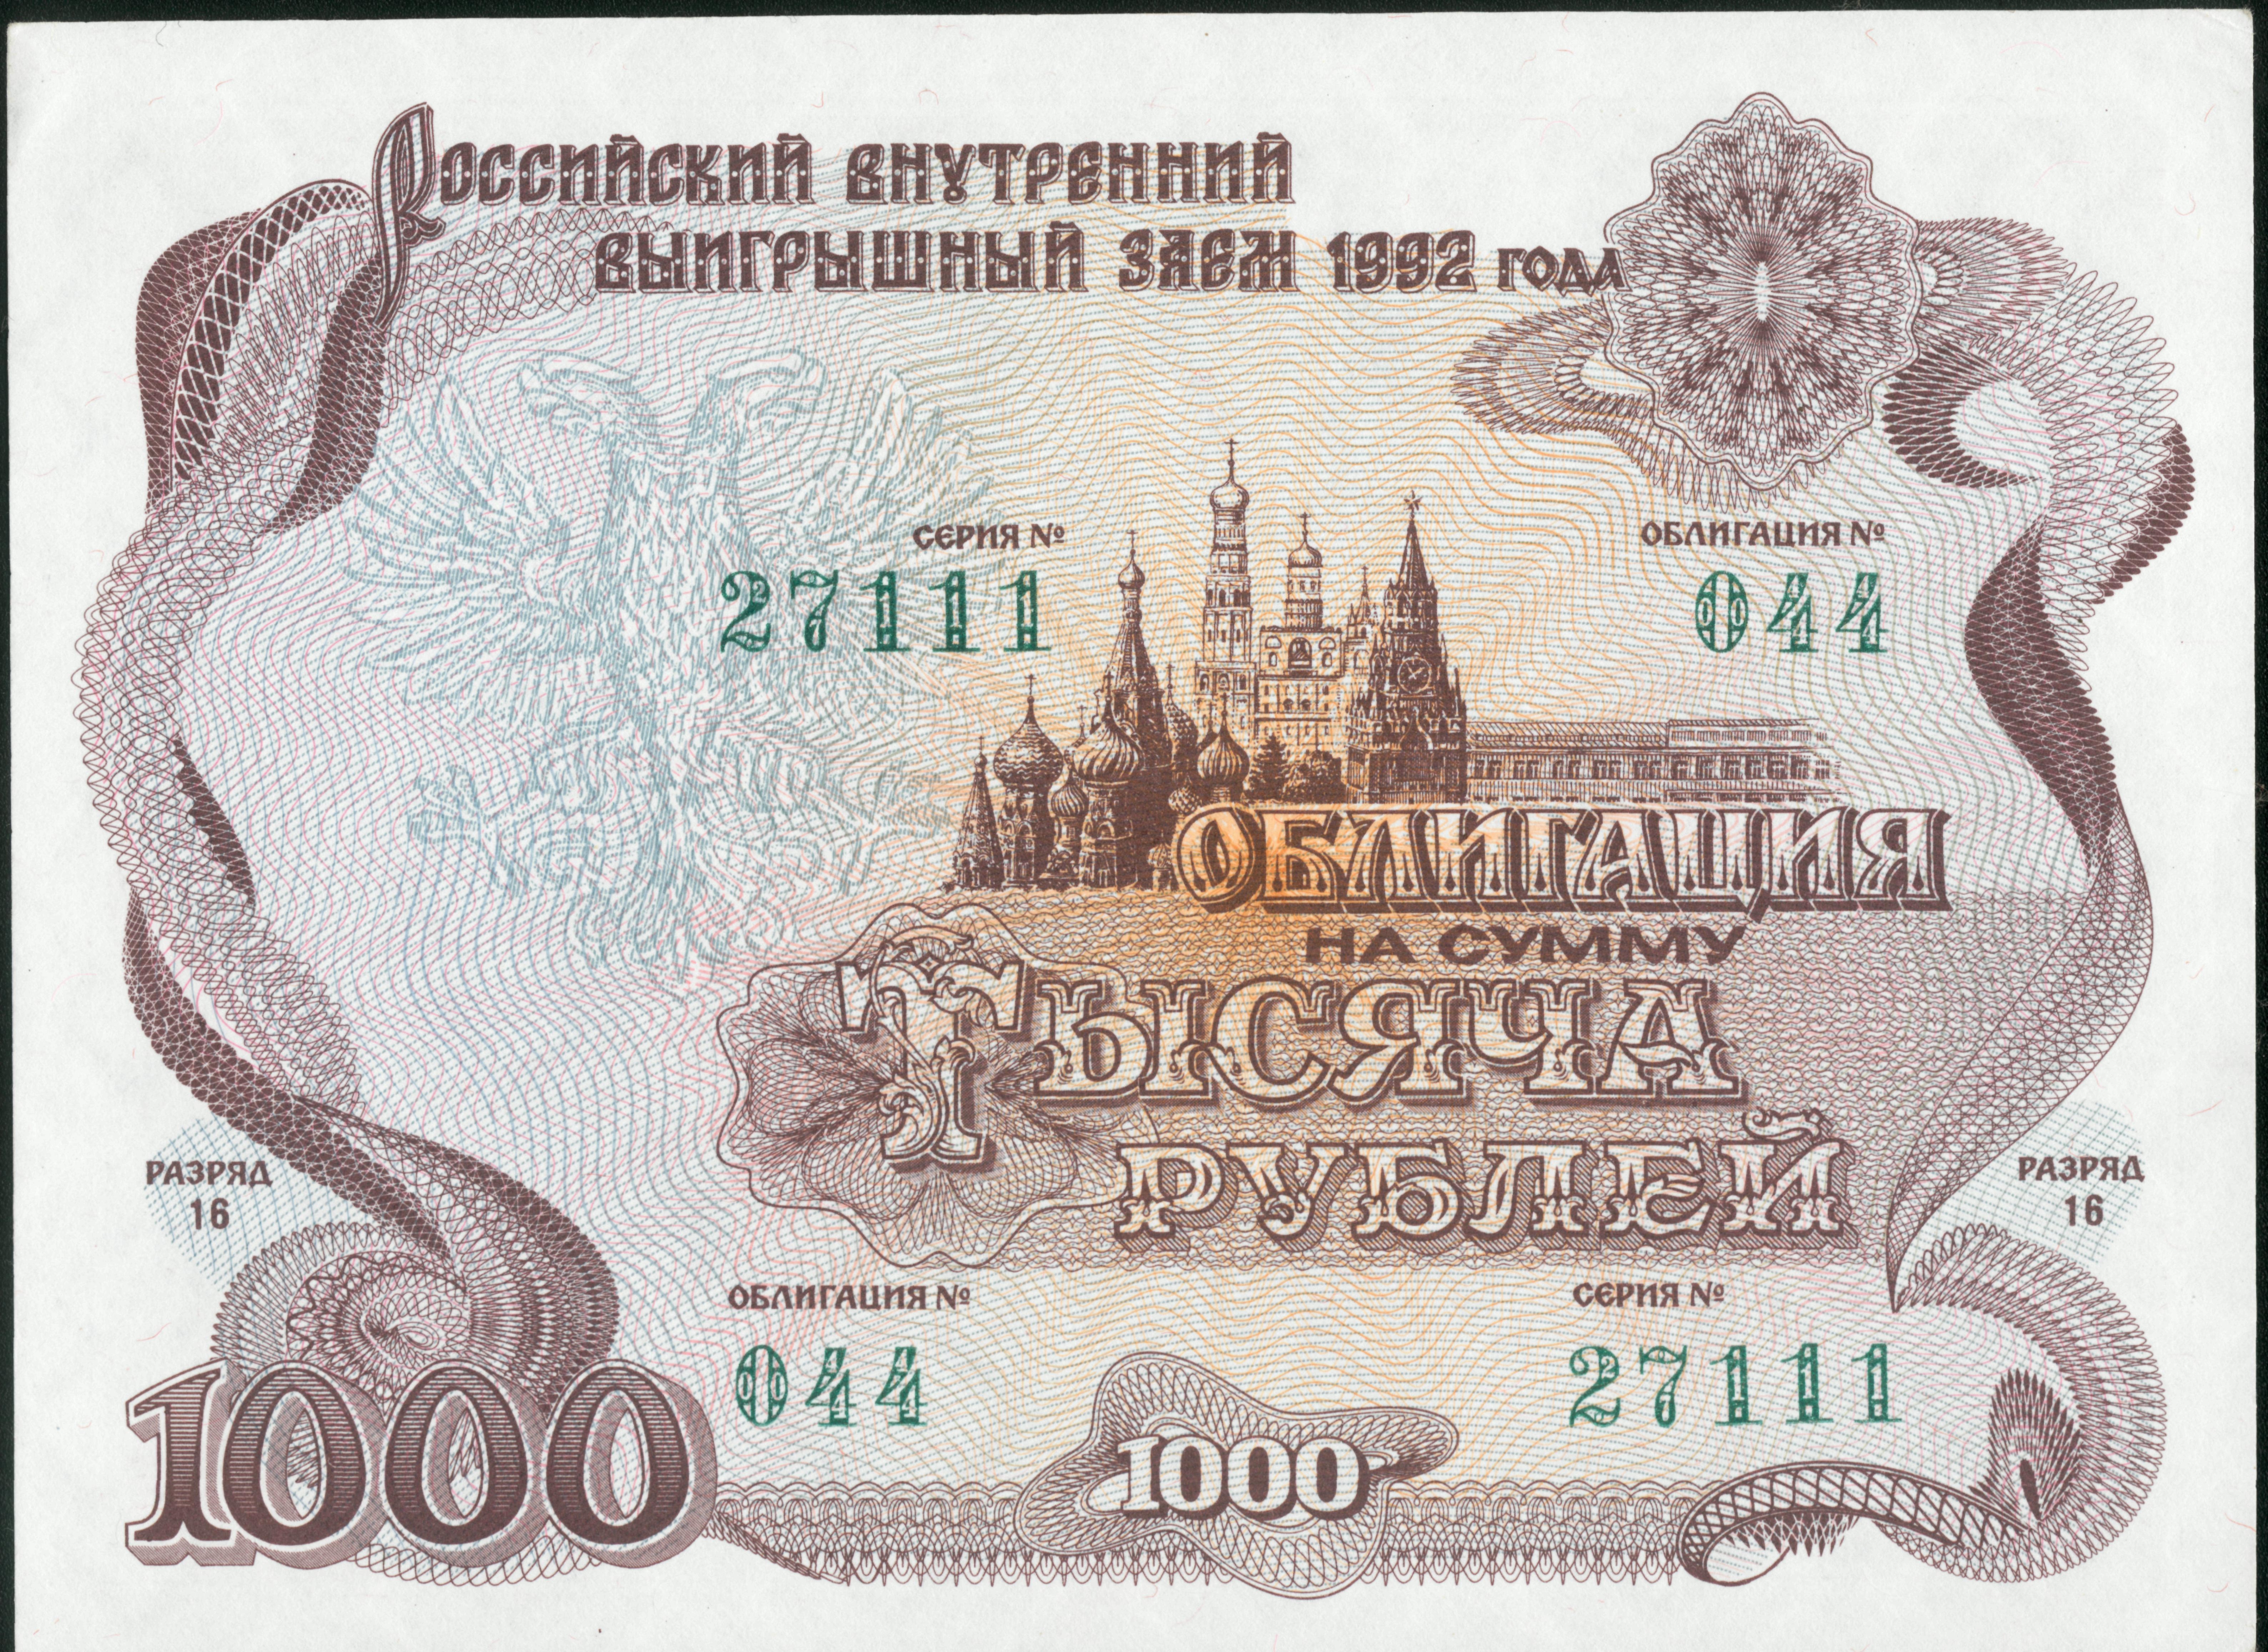 Облигация</a> Российский выигрышный внутренний заем 1992 года на тысячу рублей лицевая сторона